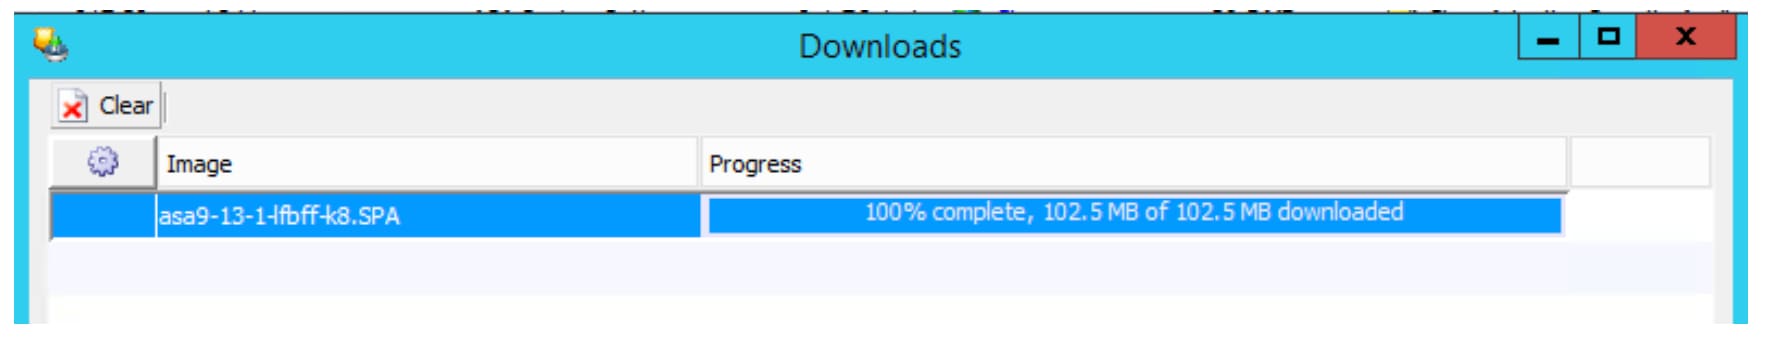 screenshot of download in progress